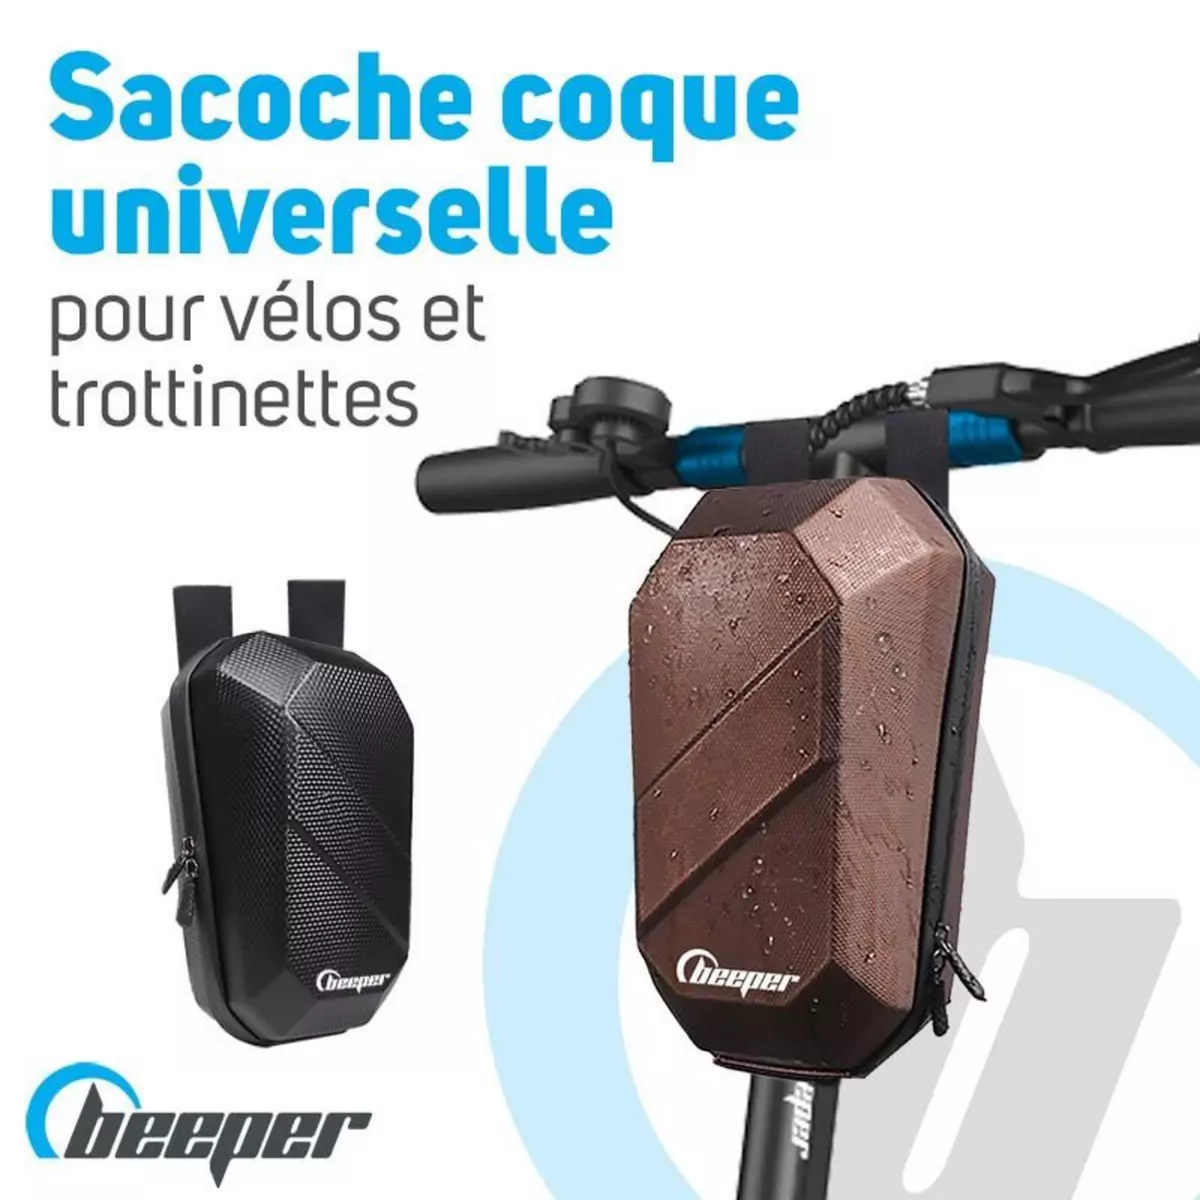  Sacoche coque universelle Pour trottinettes et vélos Couleur - Bronze, Taille - M